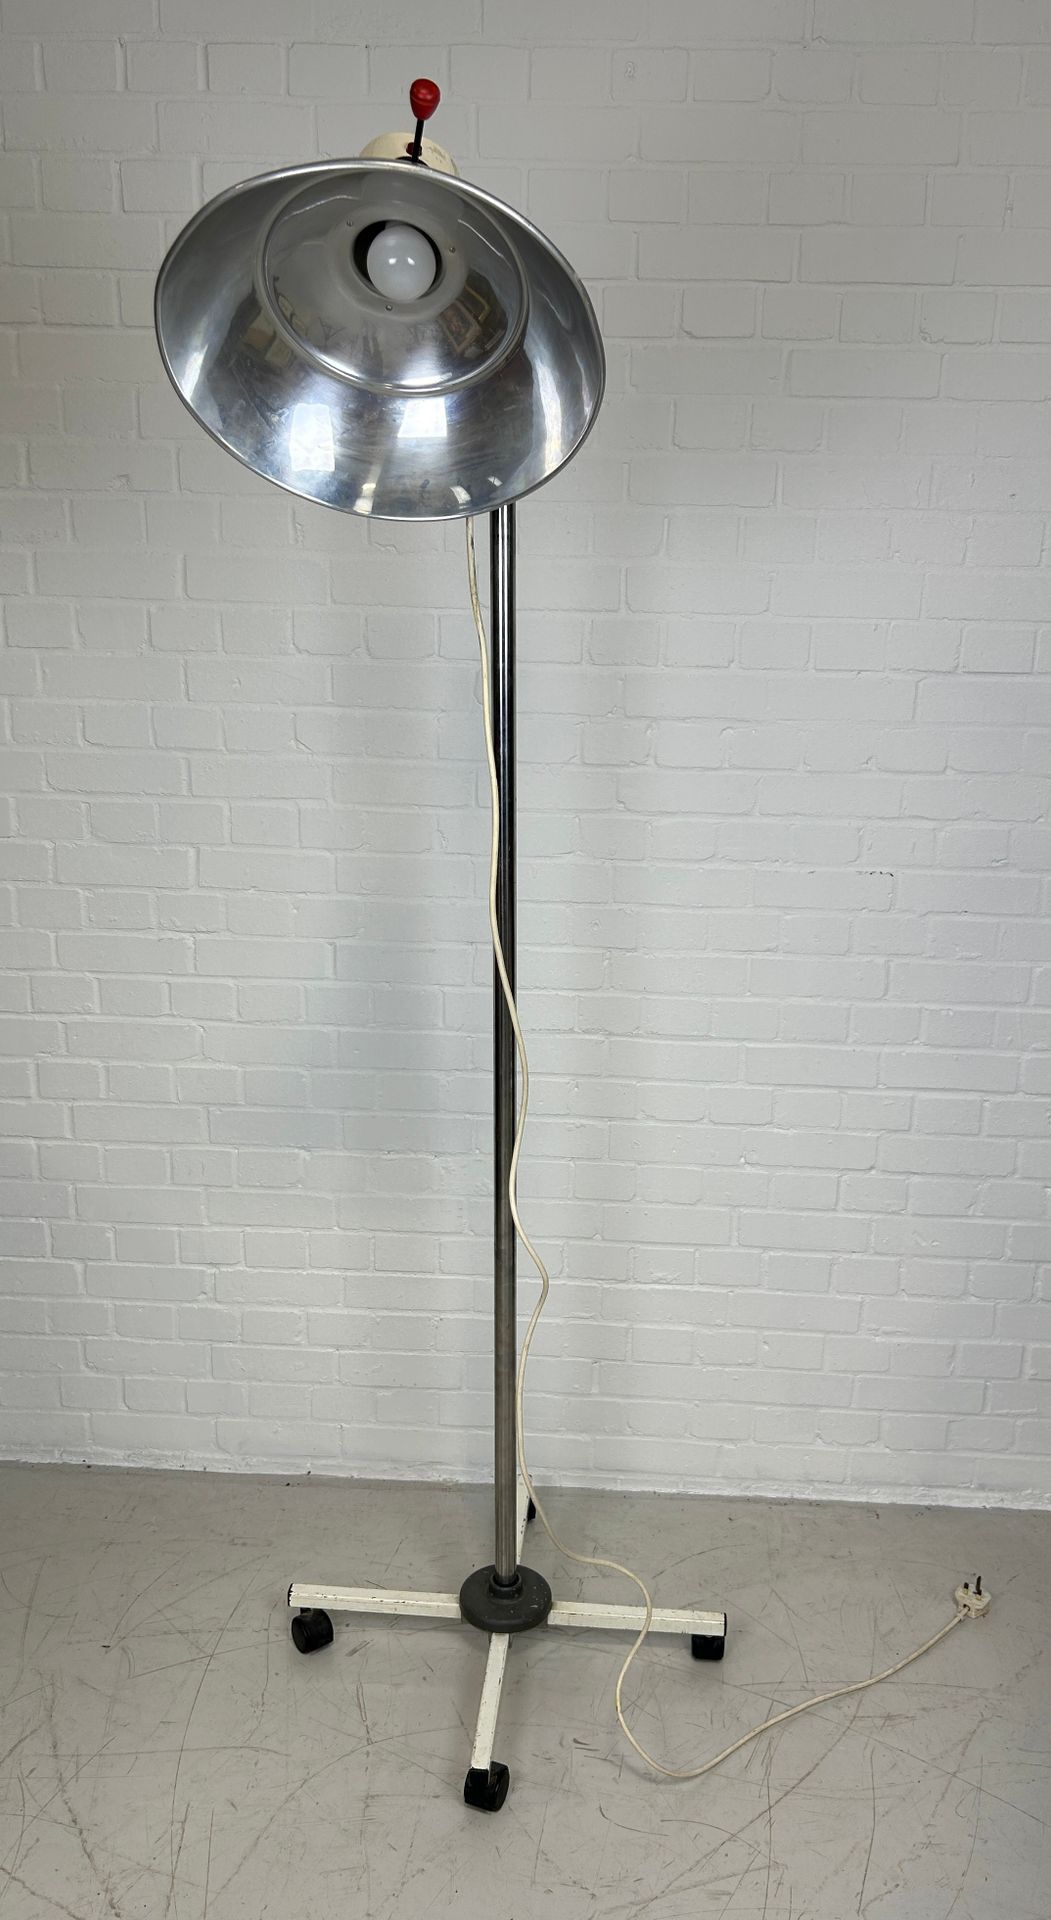 Null 一盏医院立灯，铬制或铝制，约 20 世纪 50 年代、 

有四个脚轮。

200 厘米高